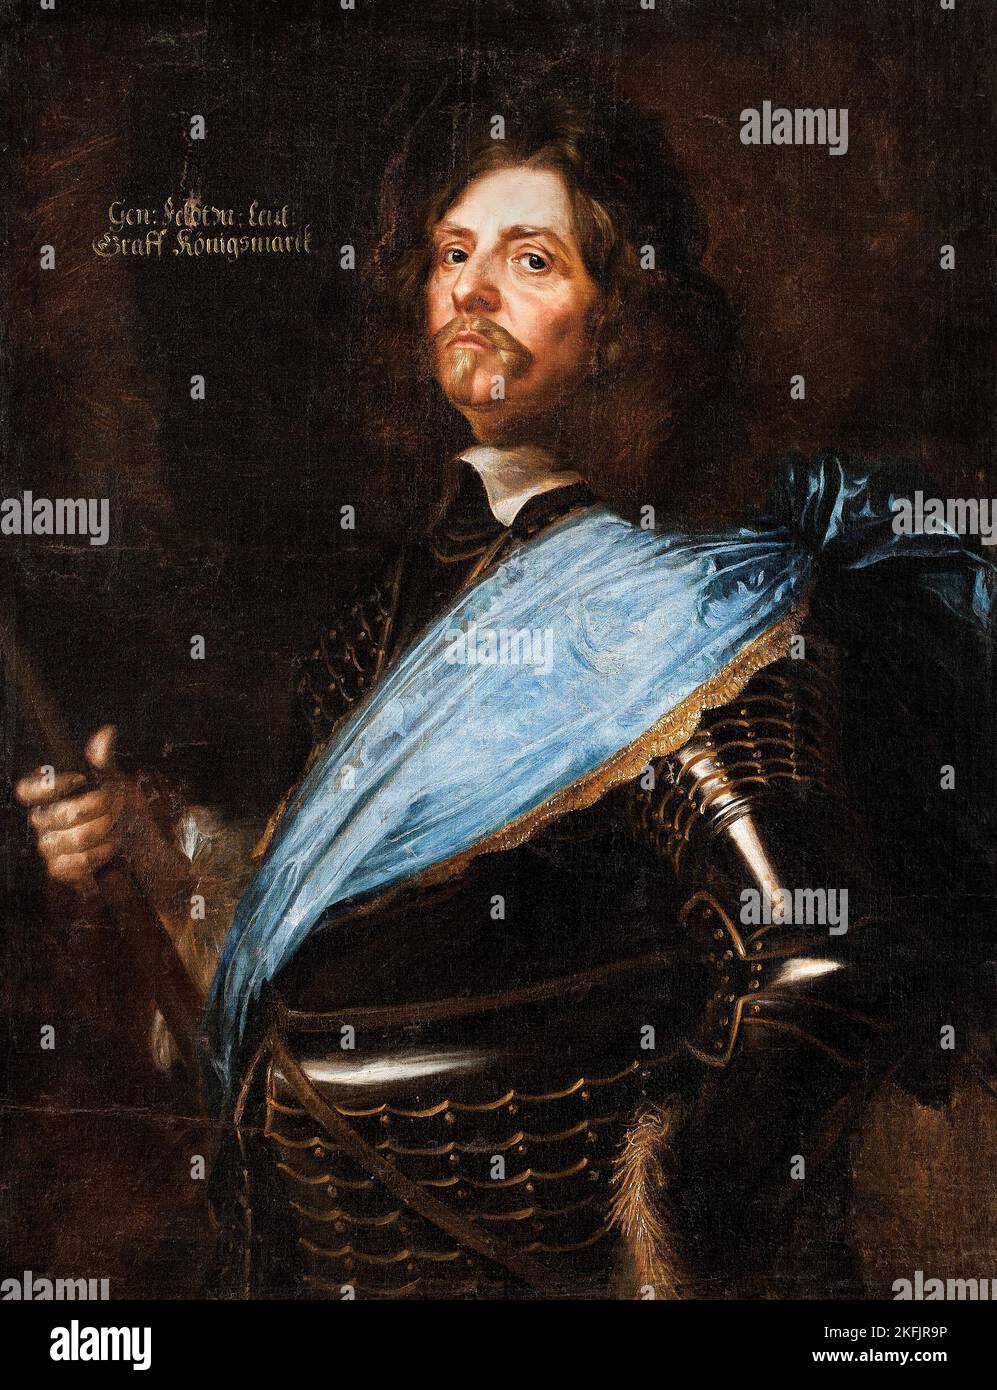 Matthaus Merian; Count Hans Christoff von Konigsmarck; 1651; Oil on canvas; Skokloster Castle, Habo, Sweden. Stock Photo